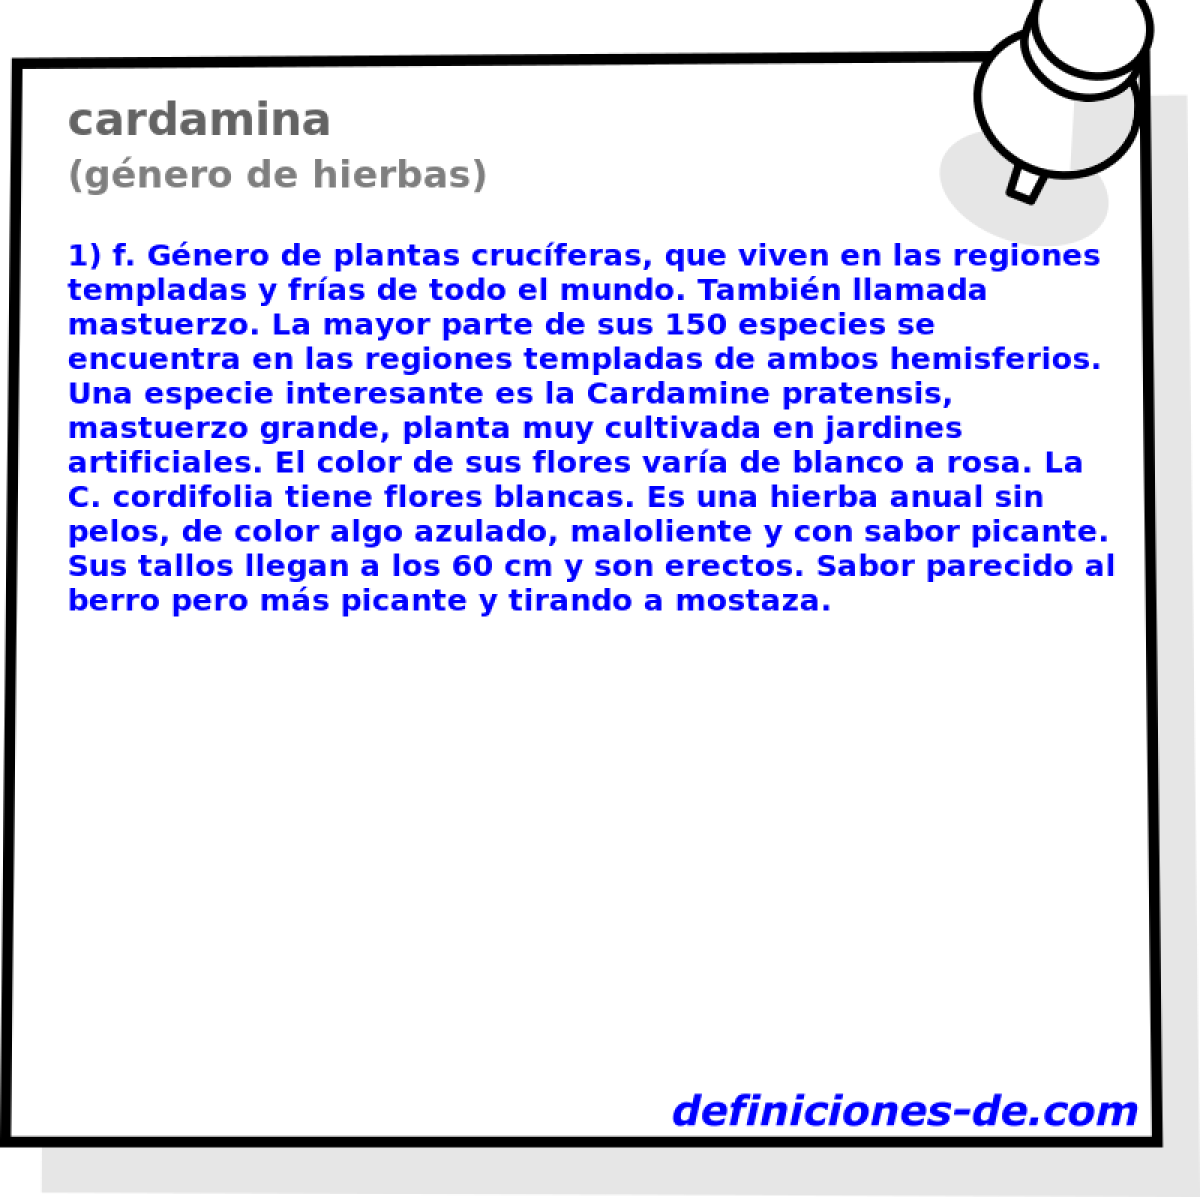 cardamina (gnero de hierbas)